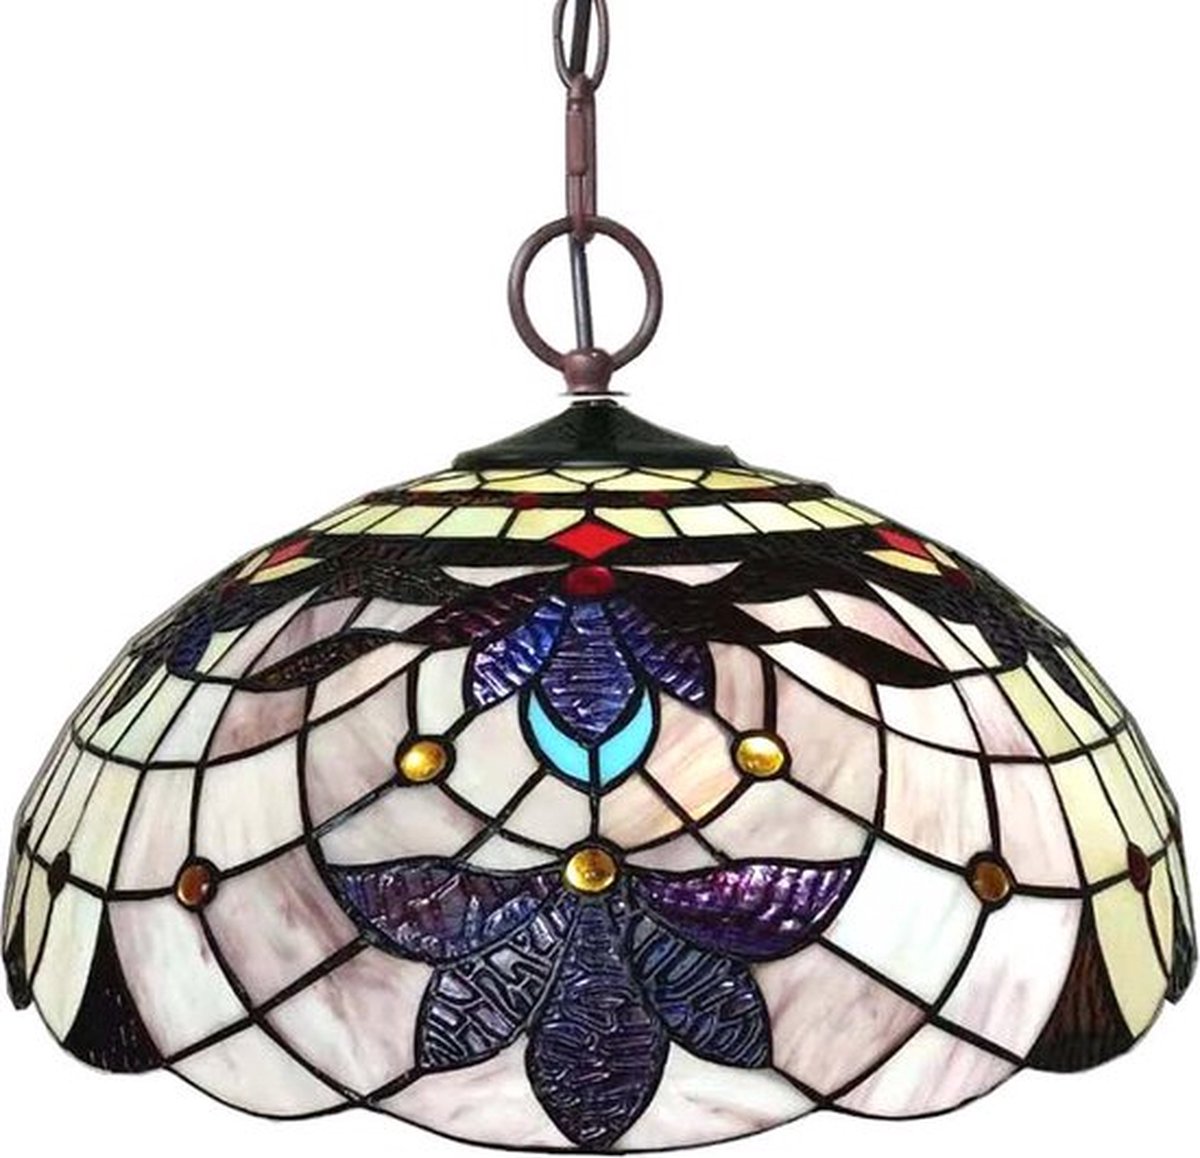 LumiLamp Hanglamp Tiffany Ø 45*23 cm E27/max 3*60W Beige Metaal, Glas Bloemen Hanglamp Eettafel Hanglampen Eetkamer